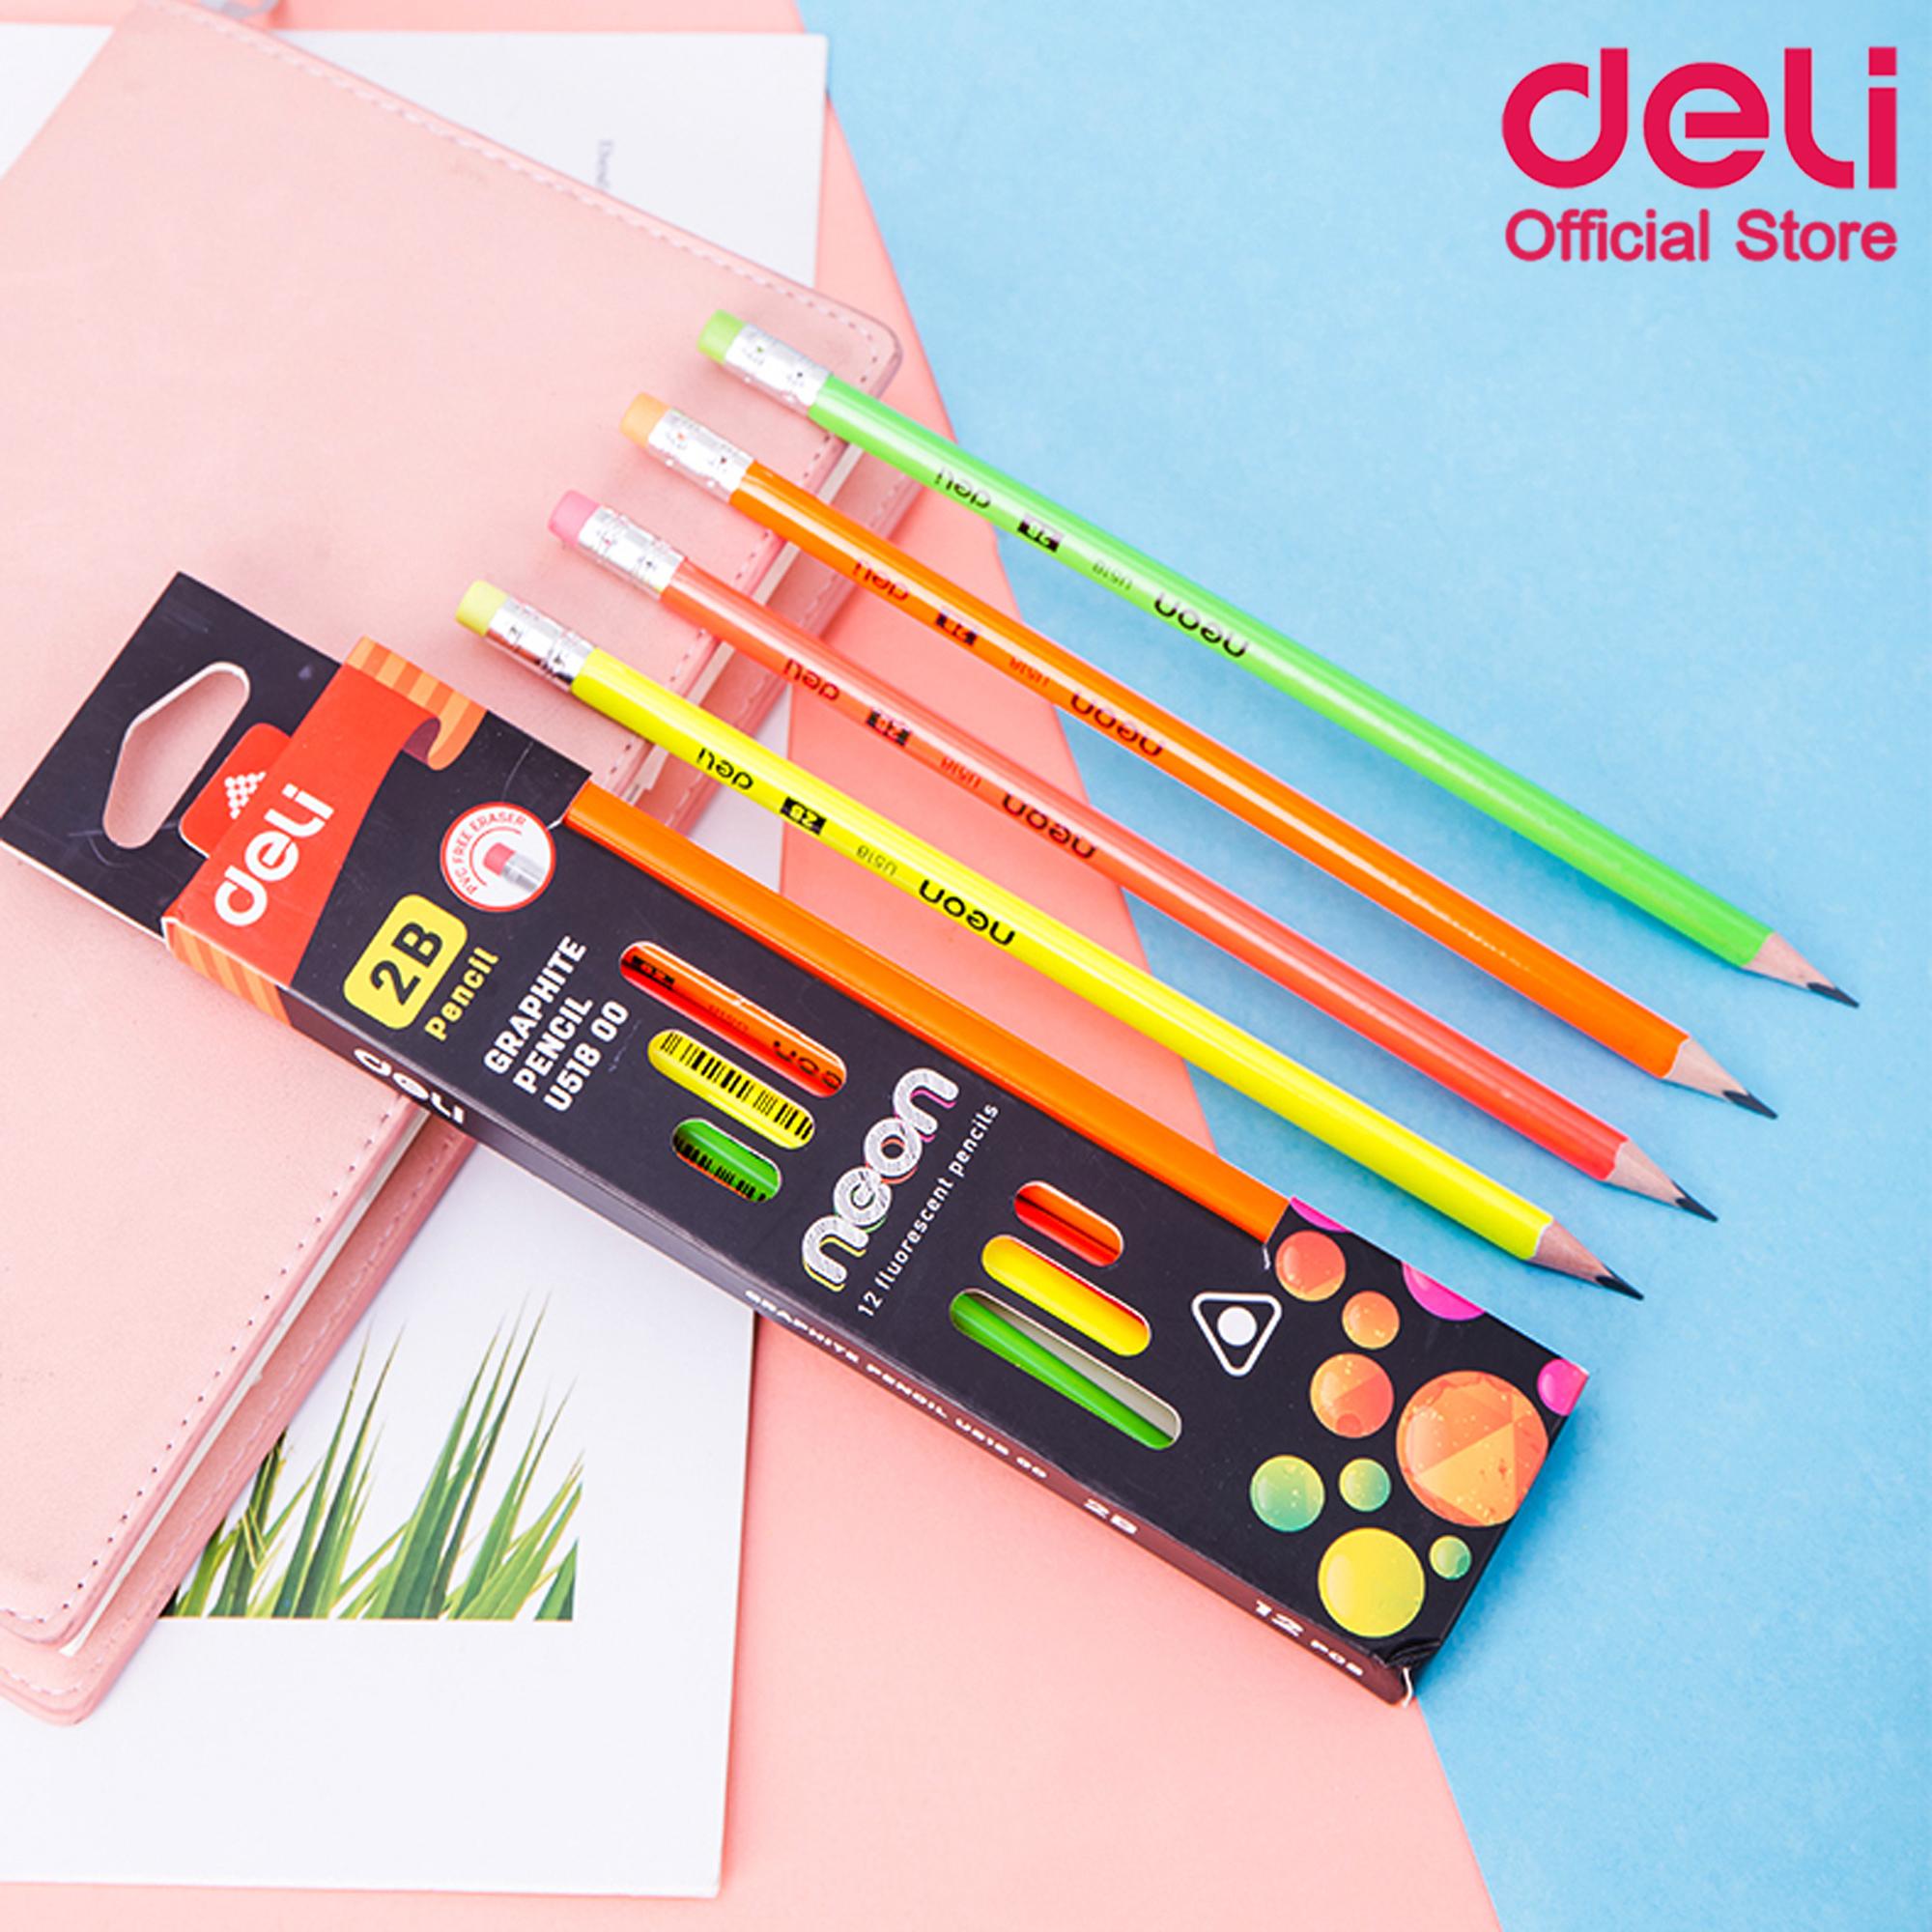 Deli U51800 Graphite Pencil ดินสอไม้ 2B ทรง 3เหลี่ยมสีนีออน แพ็ค 12 แท่ง  ดินสอ ดินสอไม้ ดินสอดำ ดินสอ2B ดินสอทำข้อสอบ เครื่องเขียน ดินสอนักเรียน อุปกรณ์การเขียน อุปกรณ์การเรียน อุปกรณ์โรงเรียน ชุดเครื่องเขียน ดินสอหัวยางลบ ดินสอแฟนซี ดินสอสีสดใส